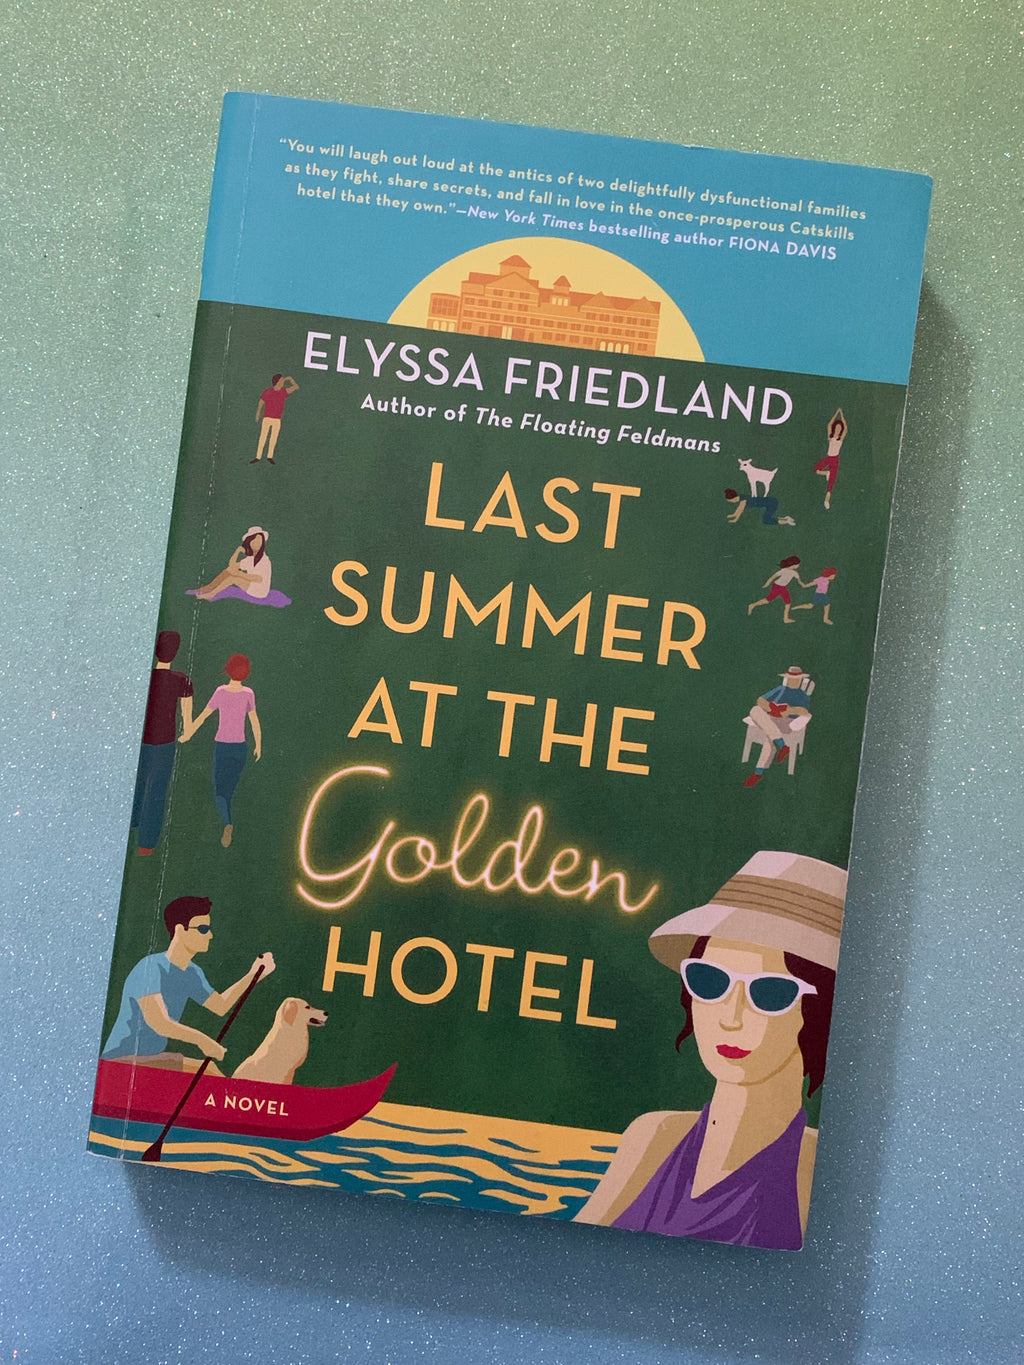 Last Summer at the Golden Hotel- By Elyssa Friedland